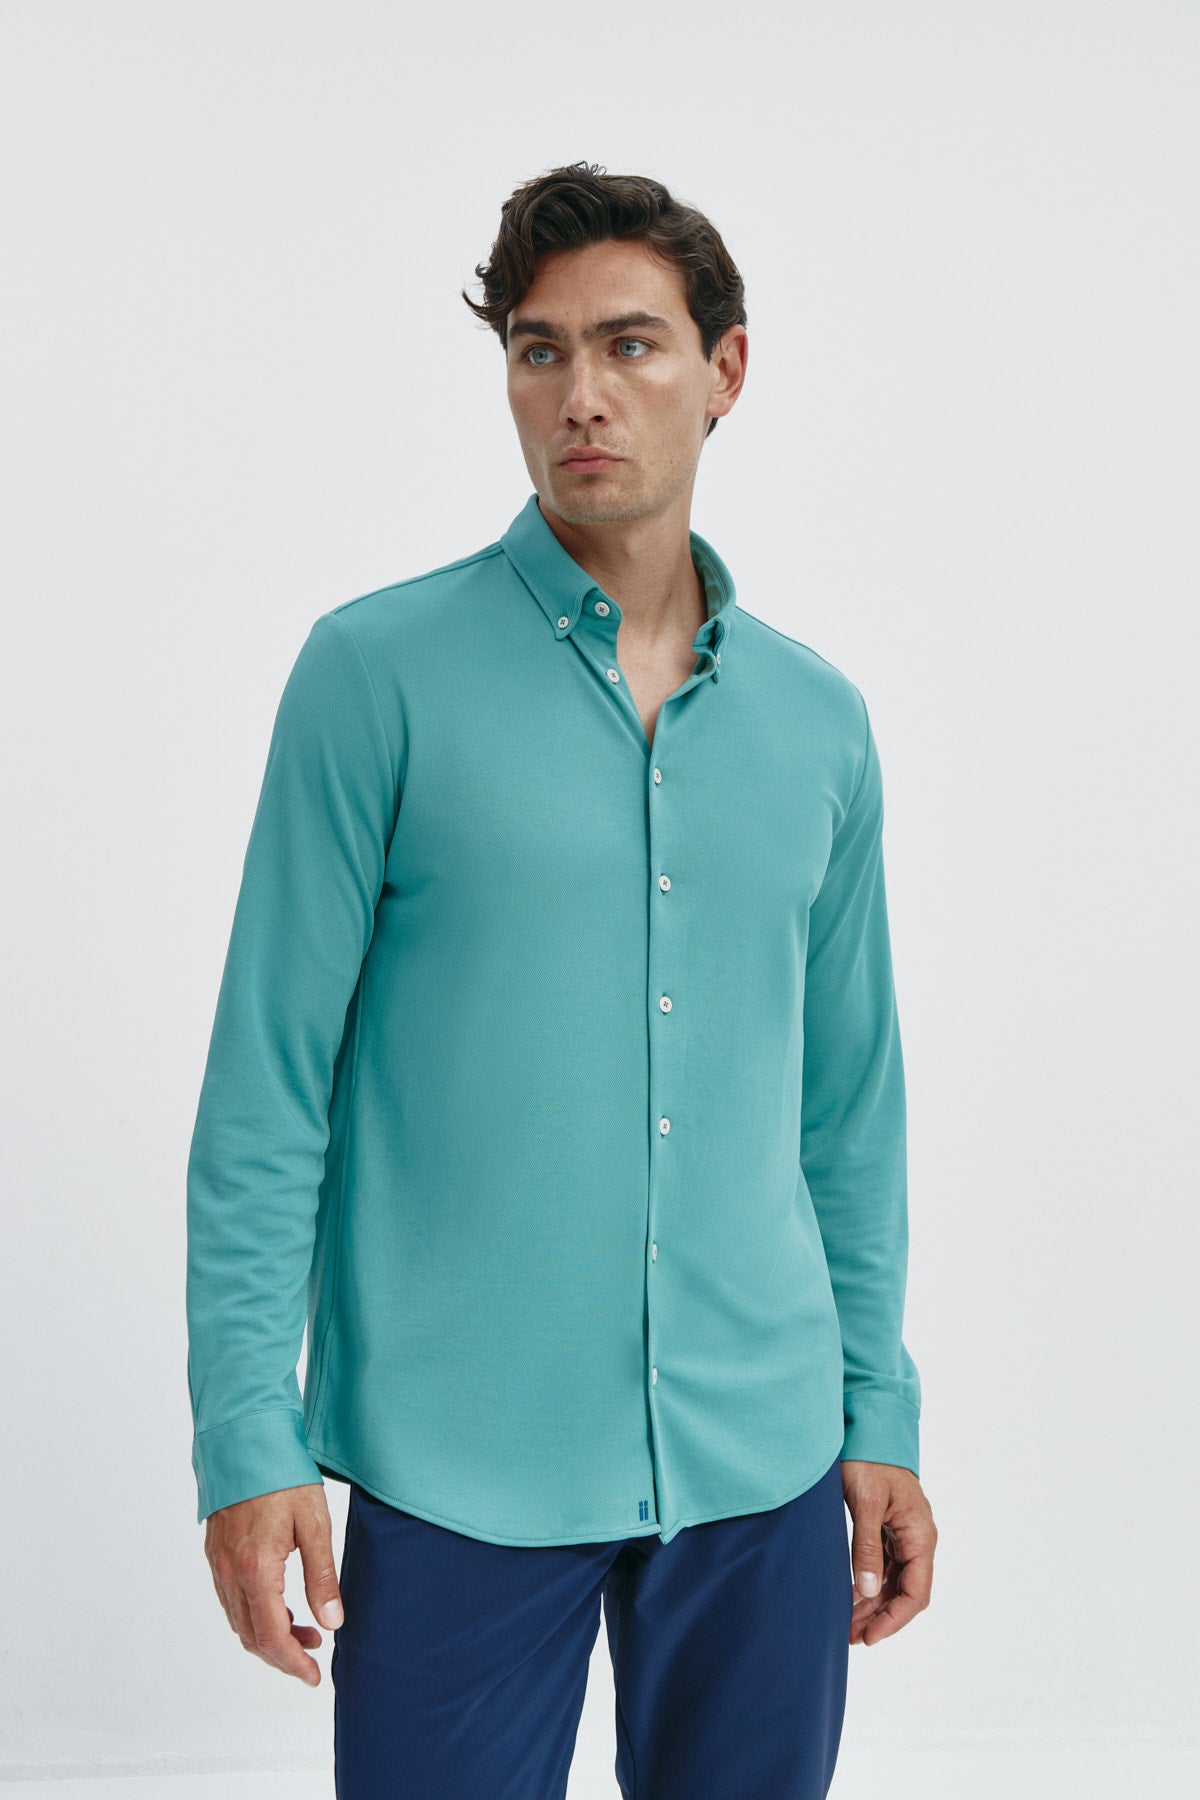 Camisa casual de hombre verde clorofila regular de Sepiia, estilo y versatilidad en una prenda duradera. Foto frente